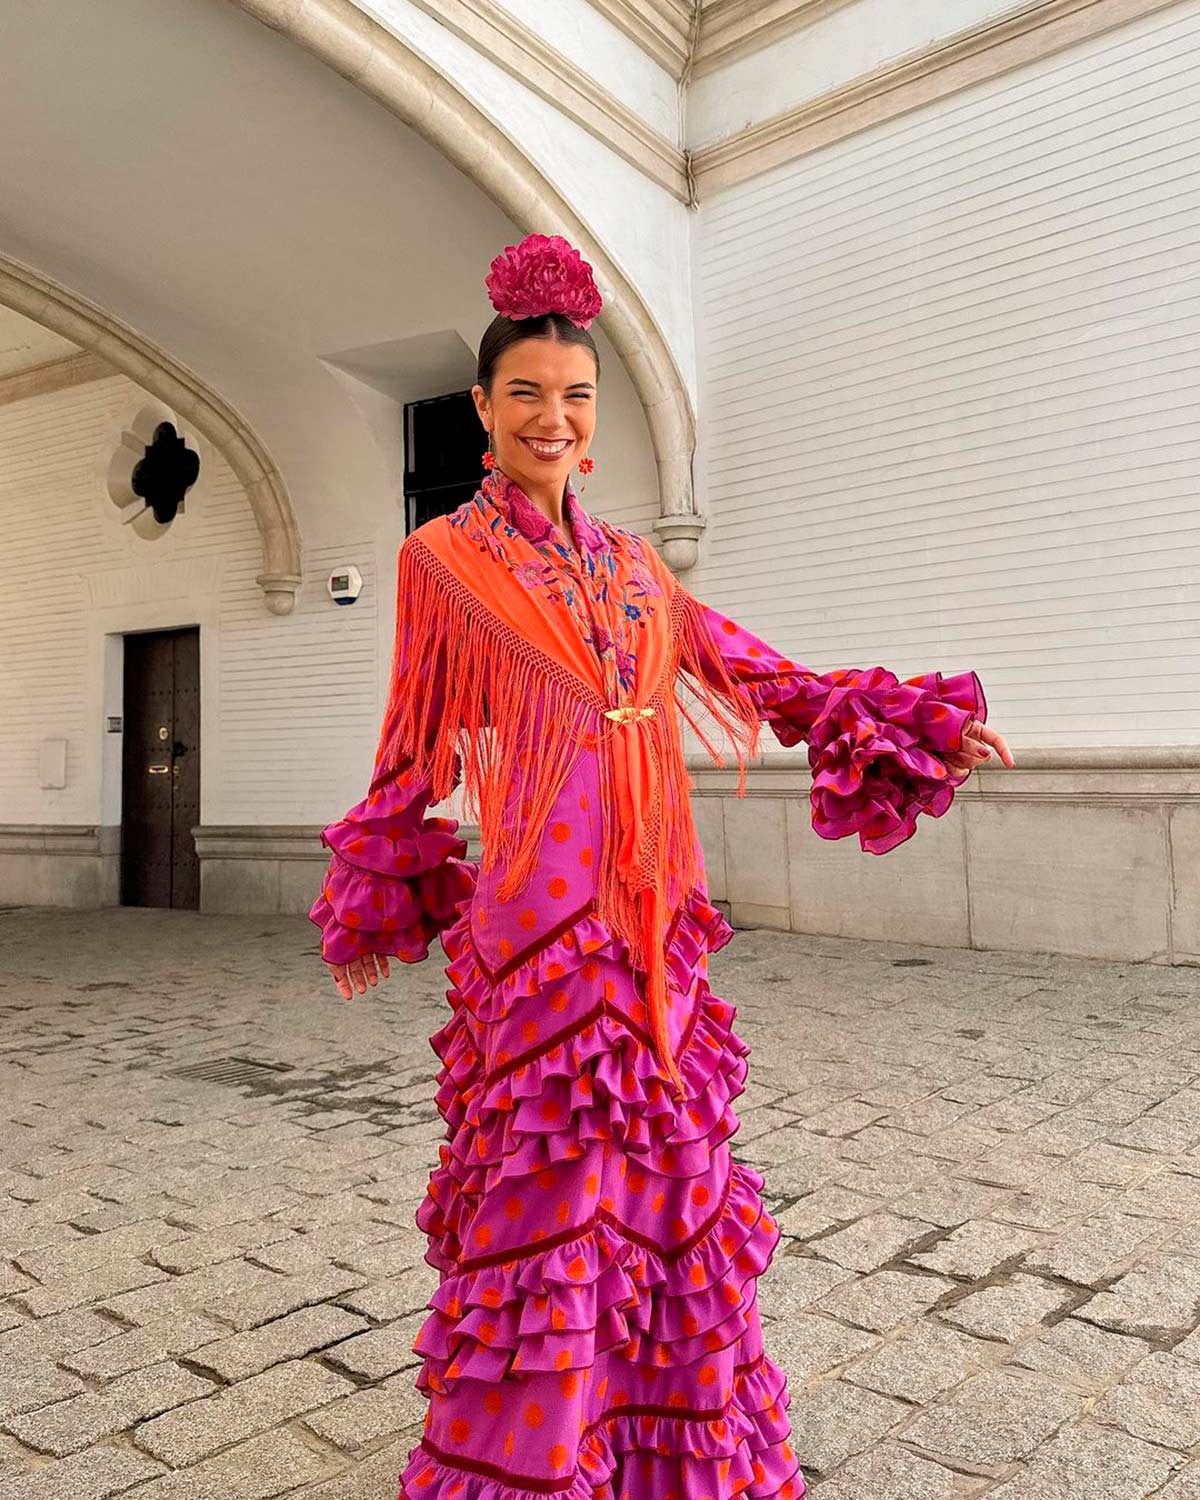 La 'influencer' sevillana Elena Gortari llevó el domingo de feria un vestido morado con lunares en contraste naranjas. El mantón, también naranja con toques florales lila y la flor en el pelo, a juego con el vestido. 